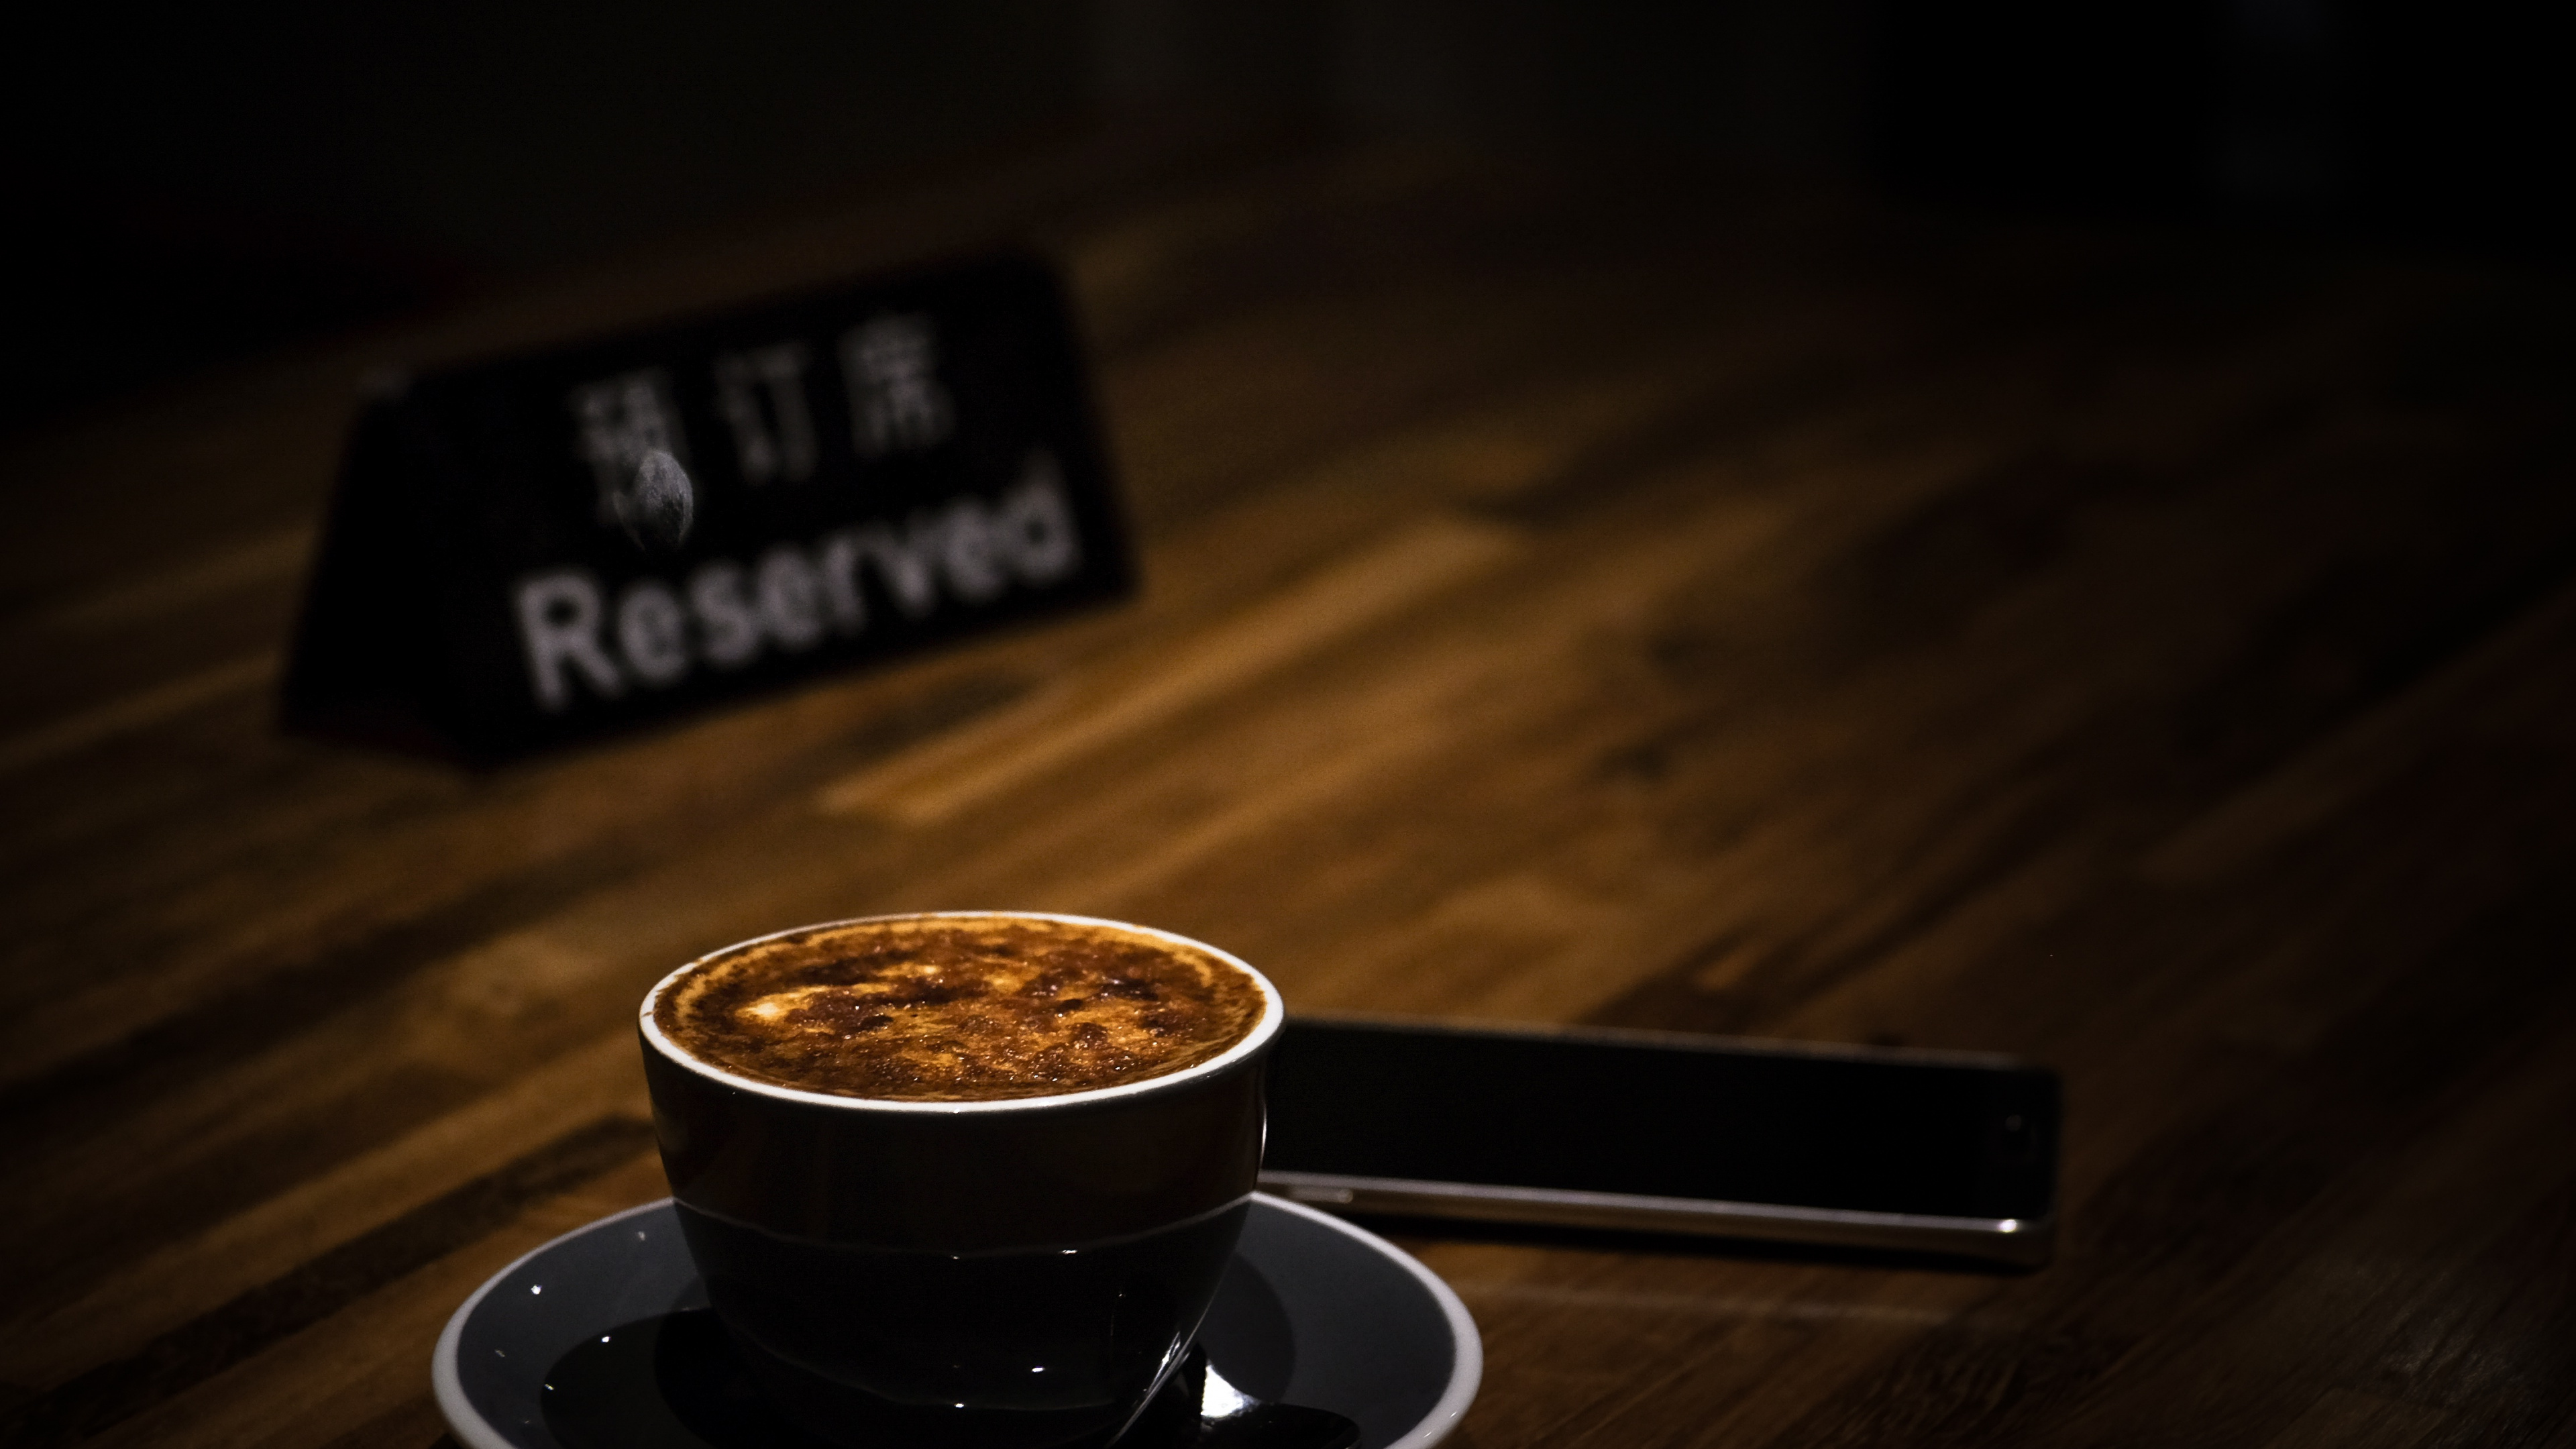 卡布奇诺咖啡, 拿铁咖啡, 浓缩咖啡, 咖啡馆, 咖啡杯 壁纸 3840x2160 允许